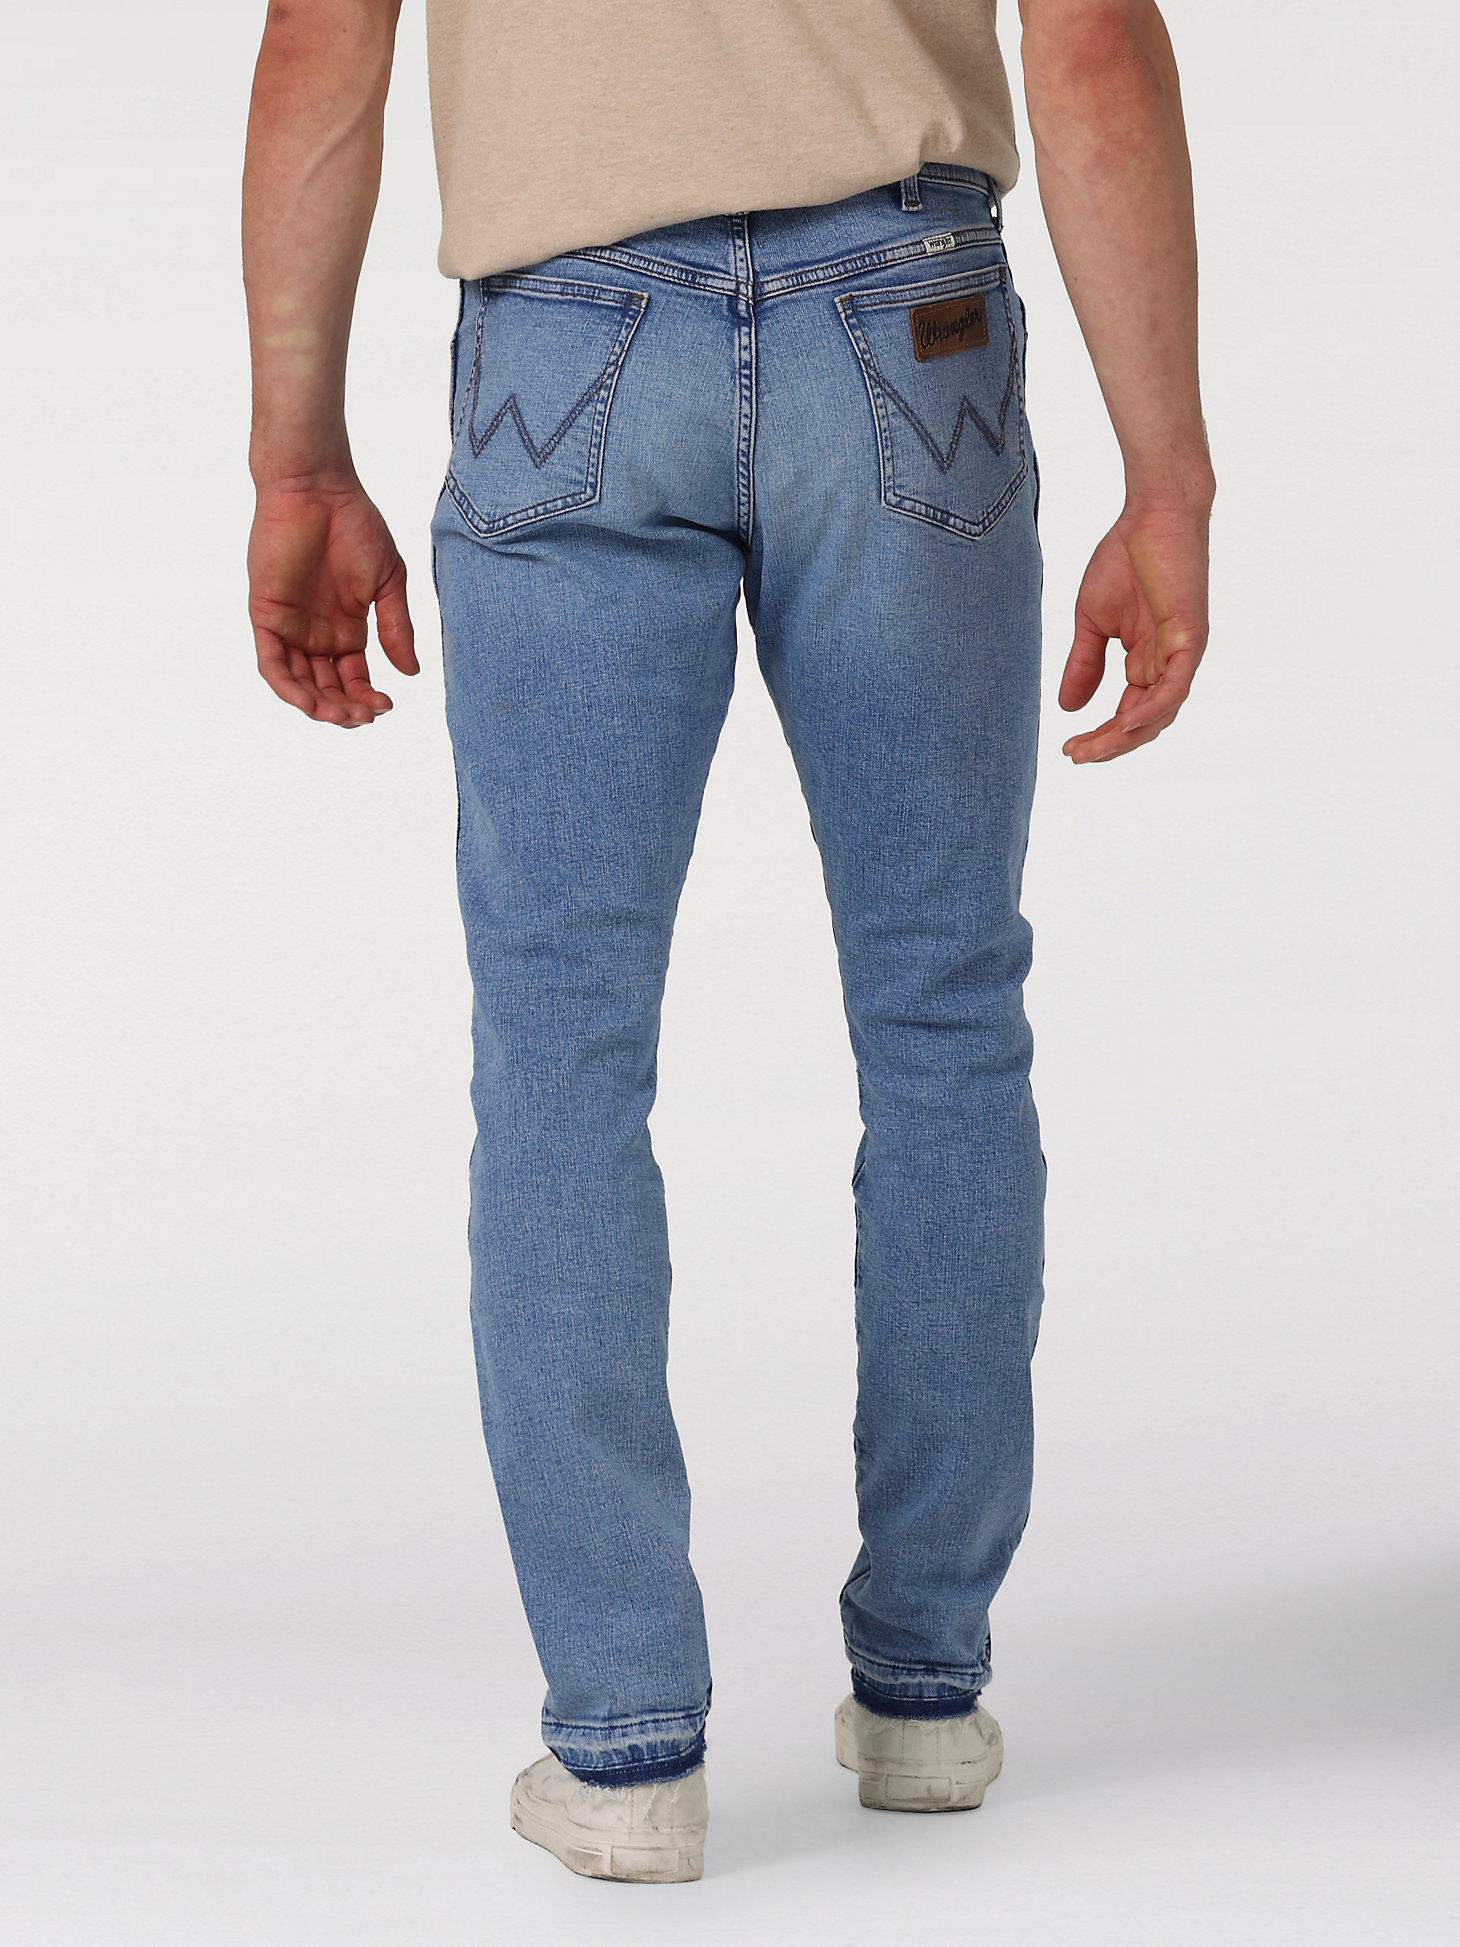 Men's Slim Fit Jean in Come Undone alternative view 1